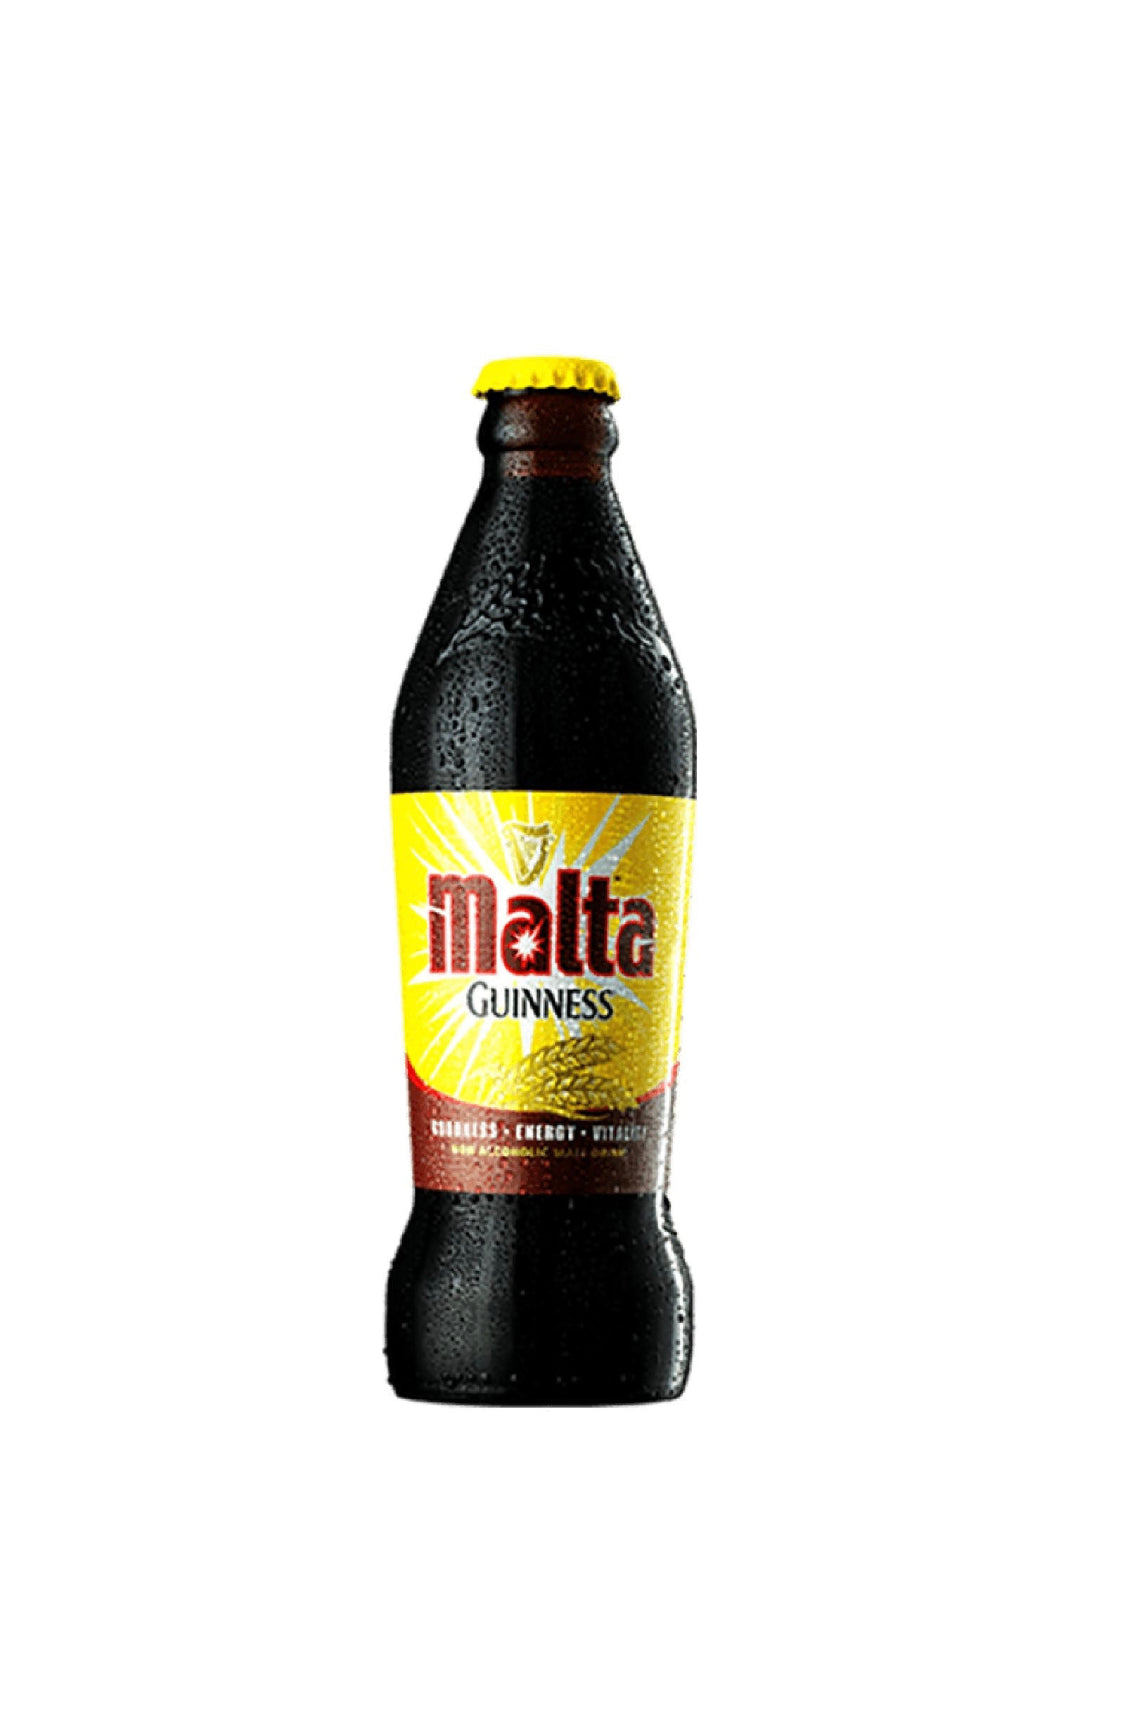 Malta Guinness